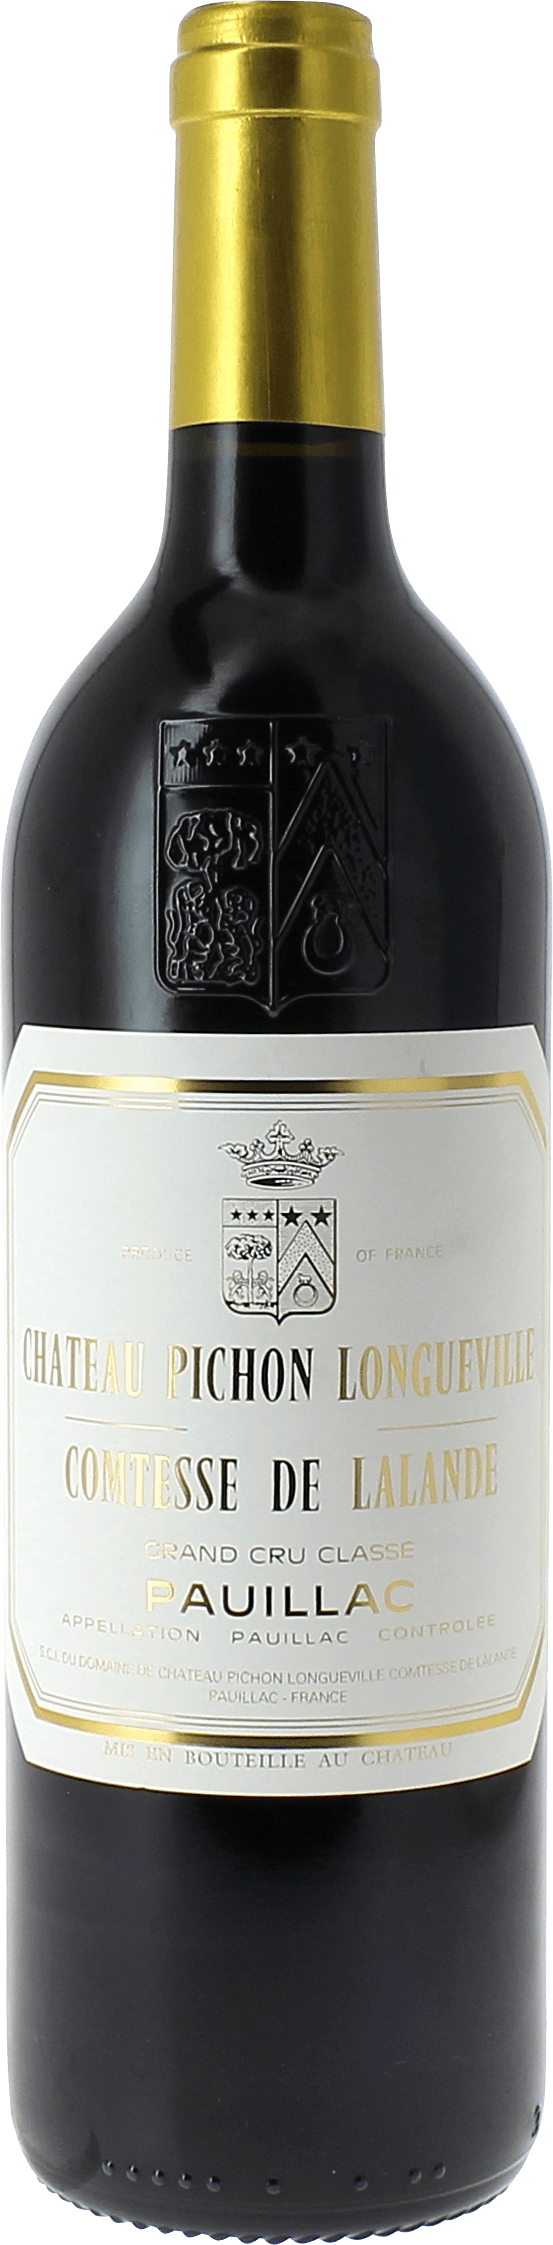 Pichon comtesse de lalande 2014 2me Grand cru class Pauillac, Bordeaux rouge